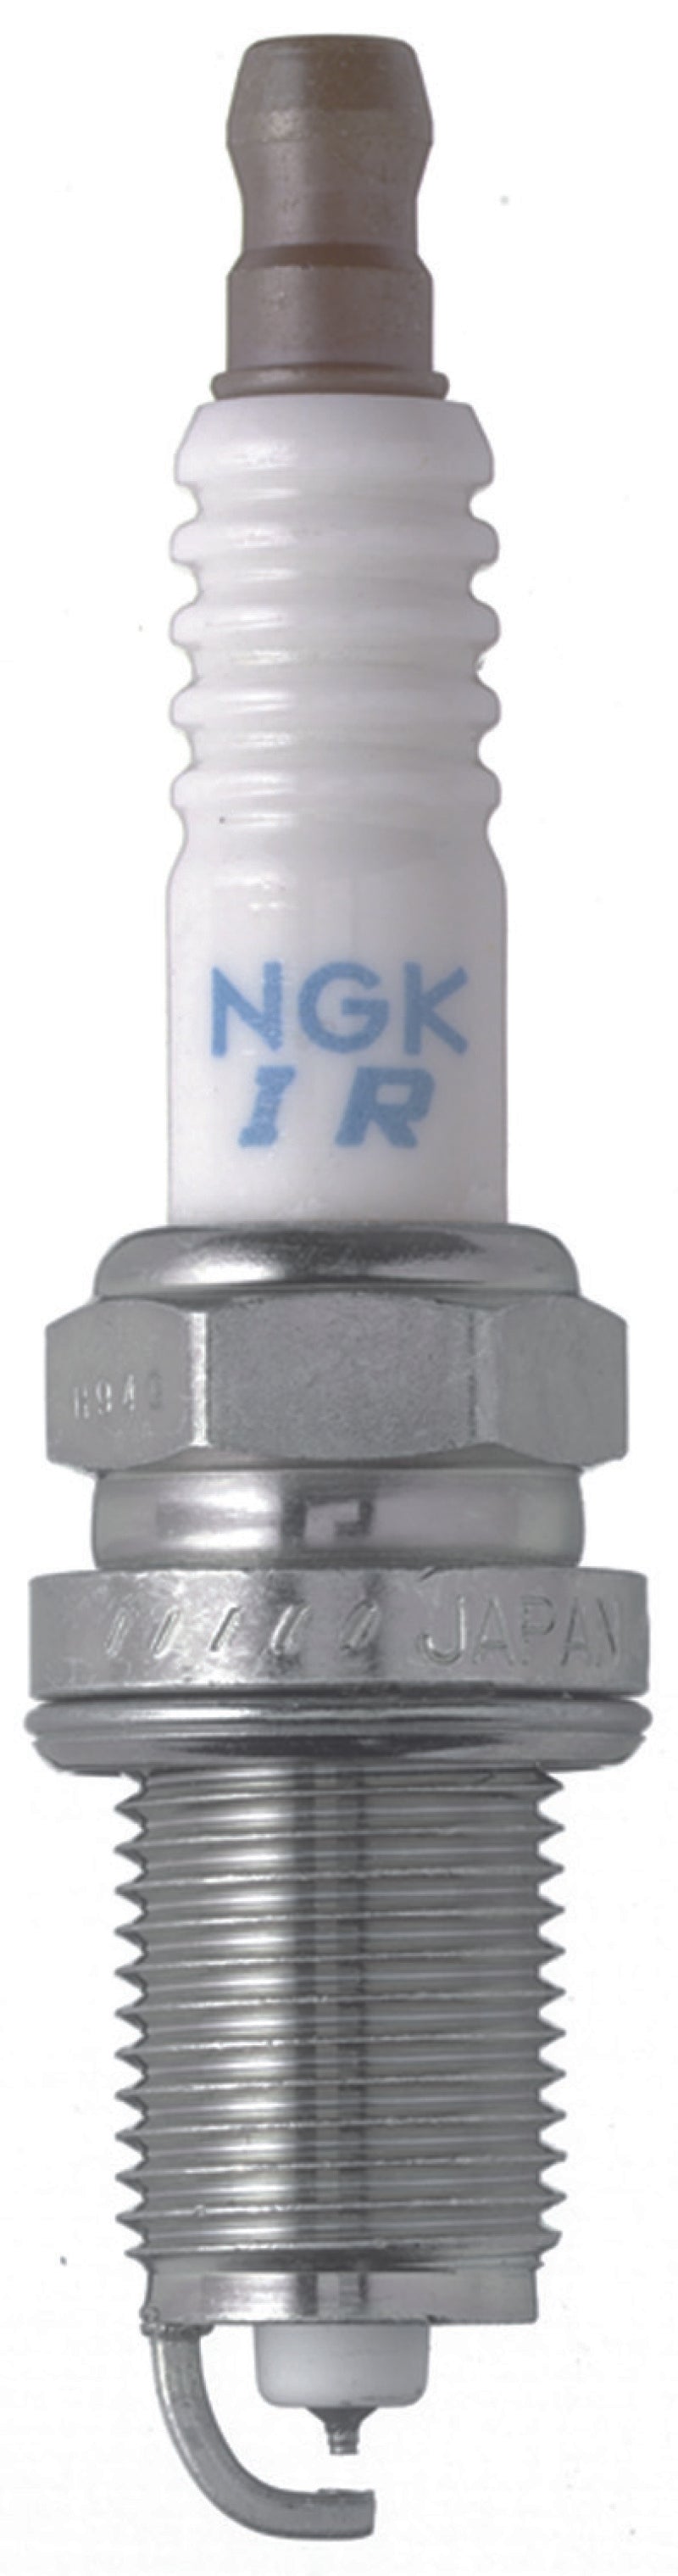 NGK Iridium Long Life Spark Plugs Box of 4 (IFR6D10).